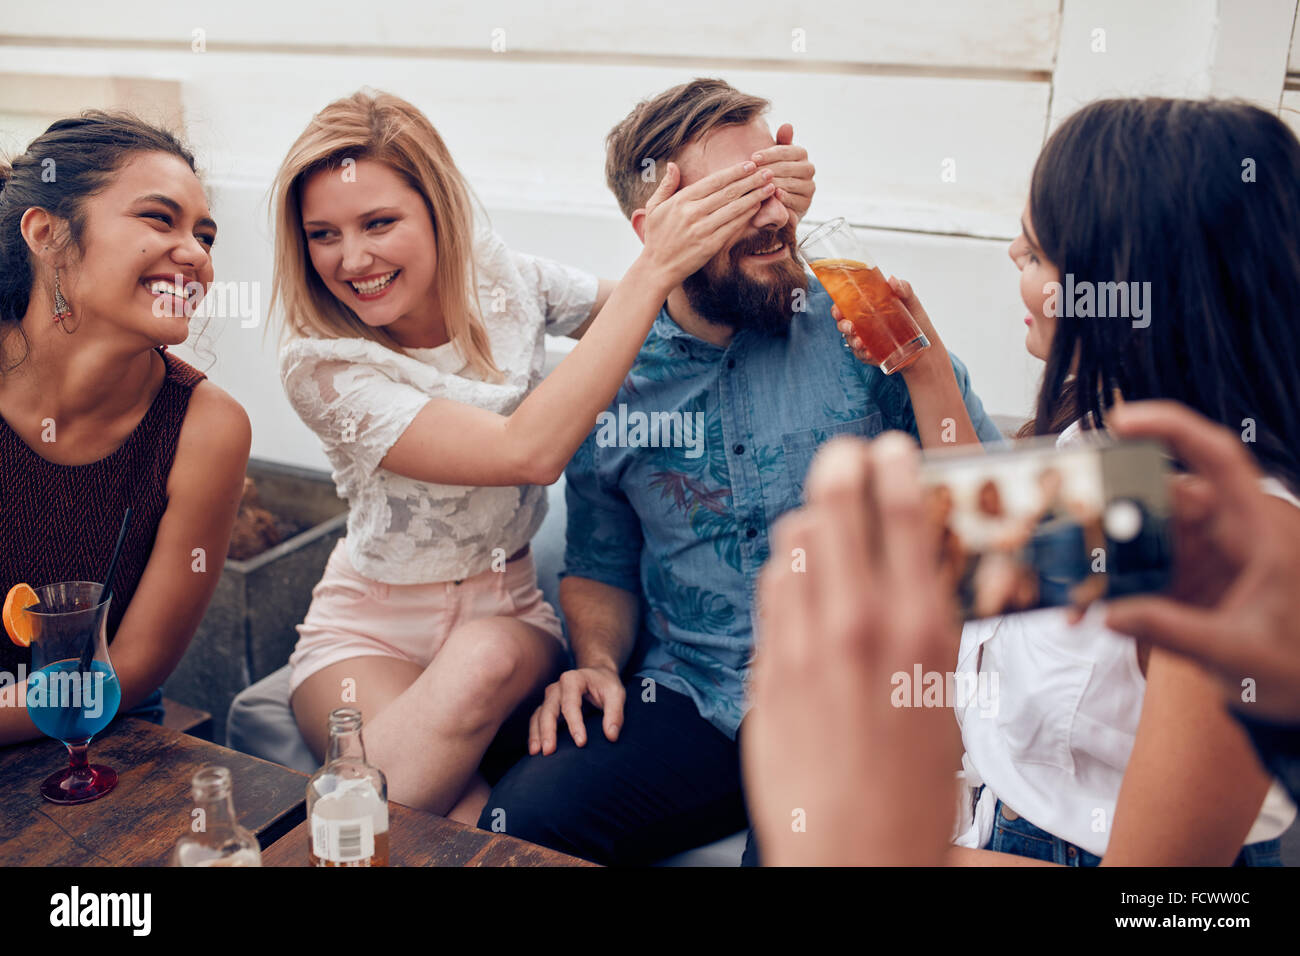 Junge Menschen sitzen zusammen genießen feiern. Schließen Augen eines Mannes mit einer anderen Frau trinken. Junge Freunde, die Spaß am Stockfoto